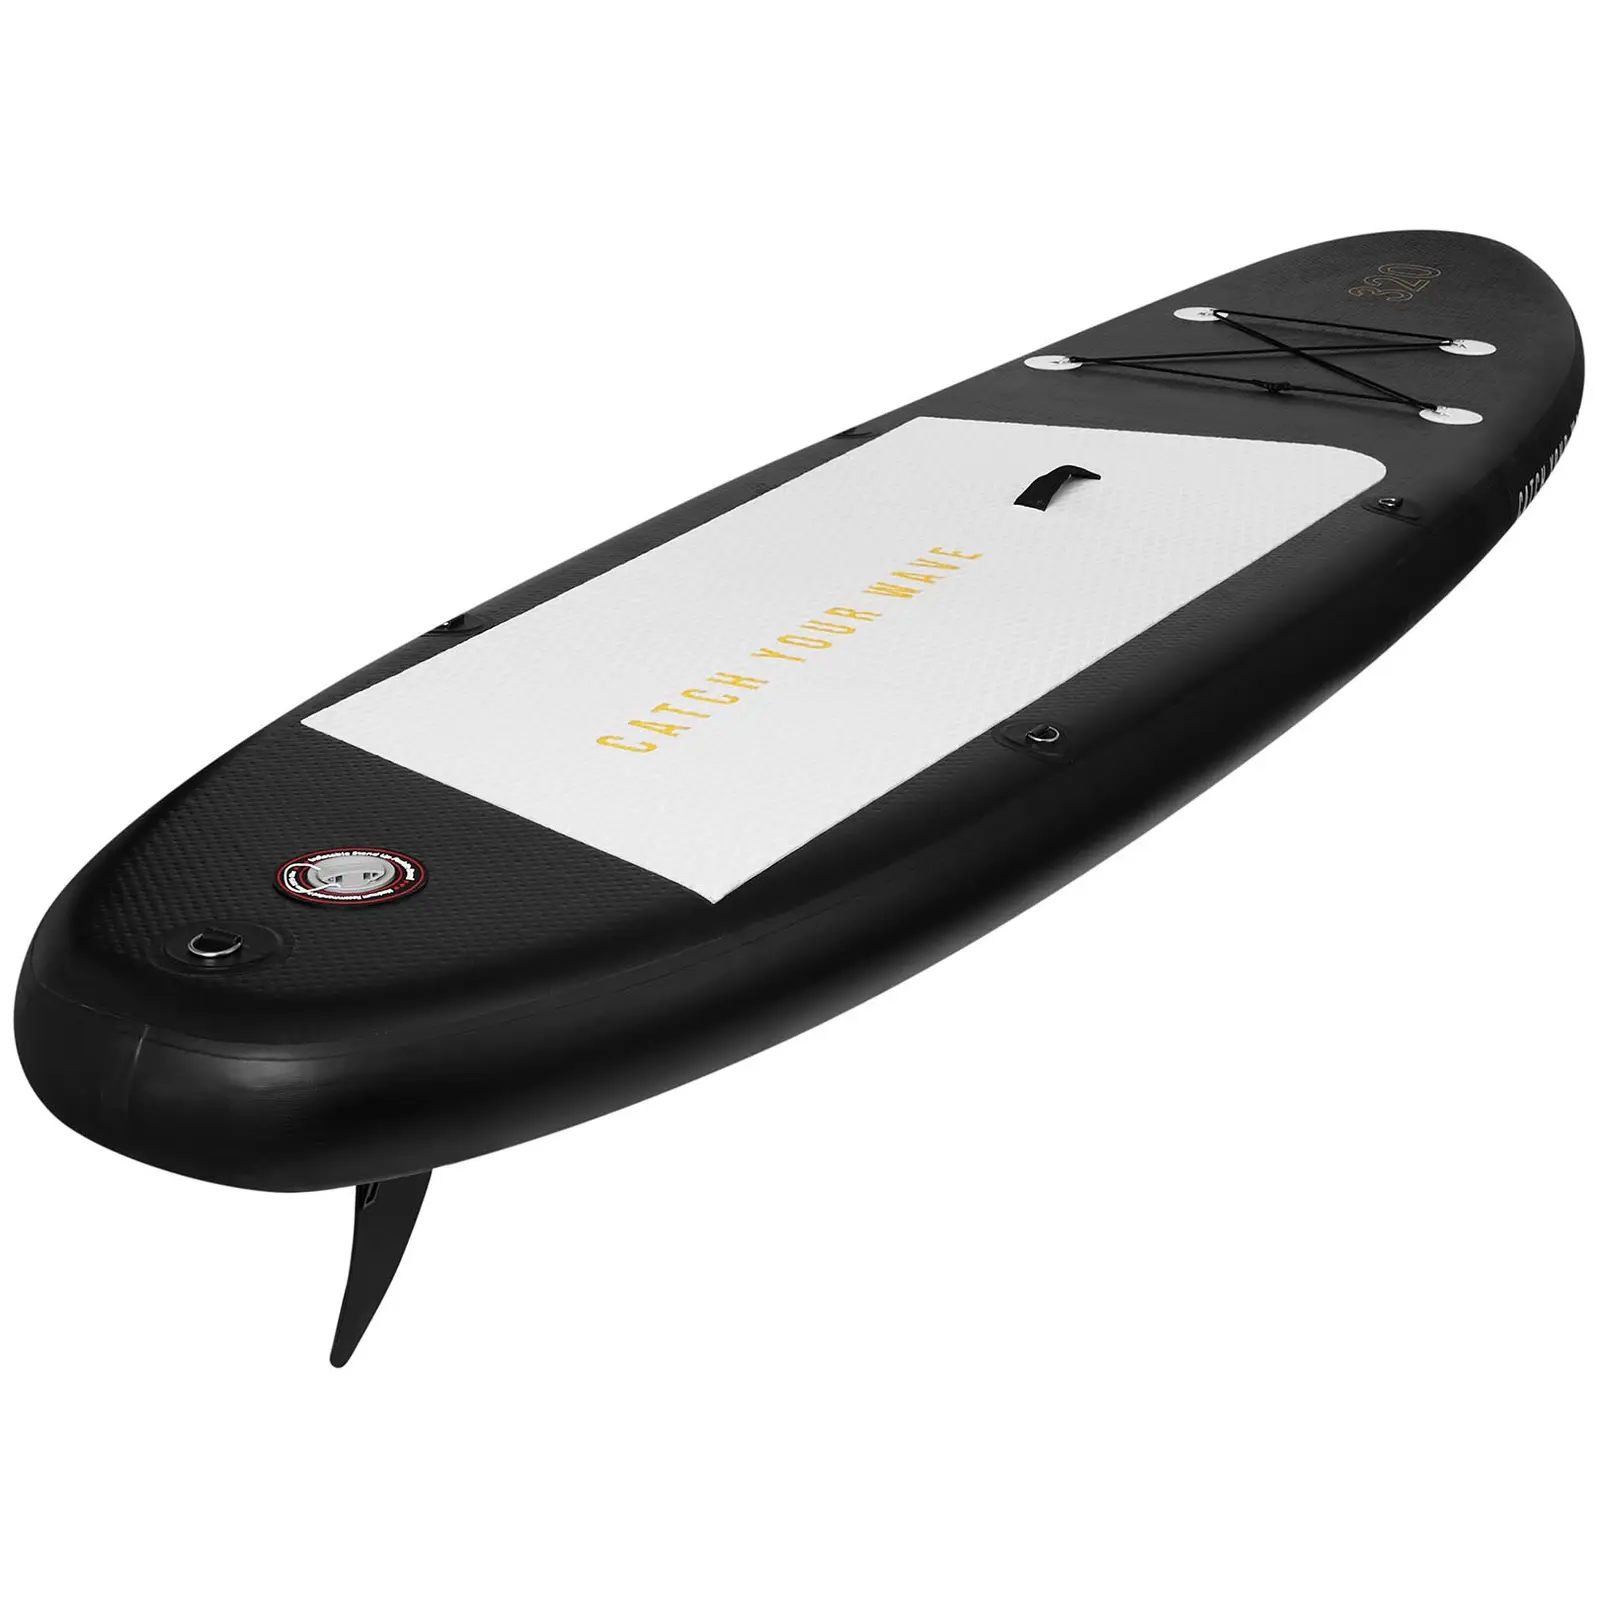 Paddle-board - 110 kg - oppusteligt - sort